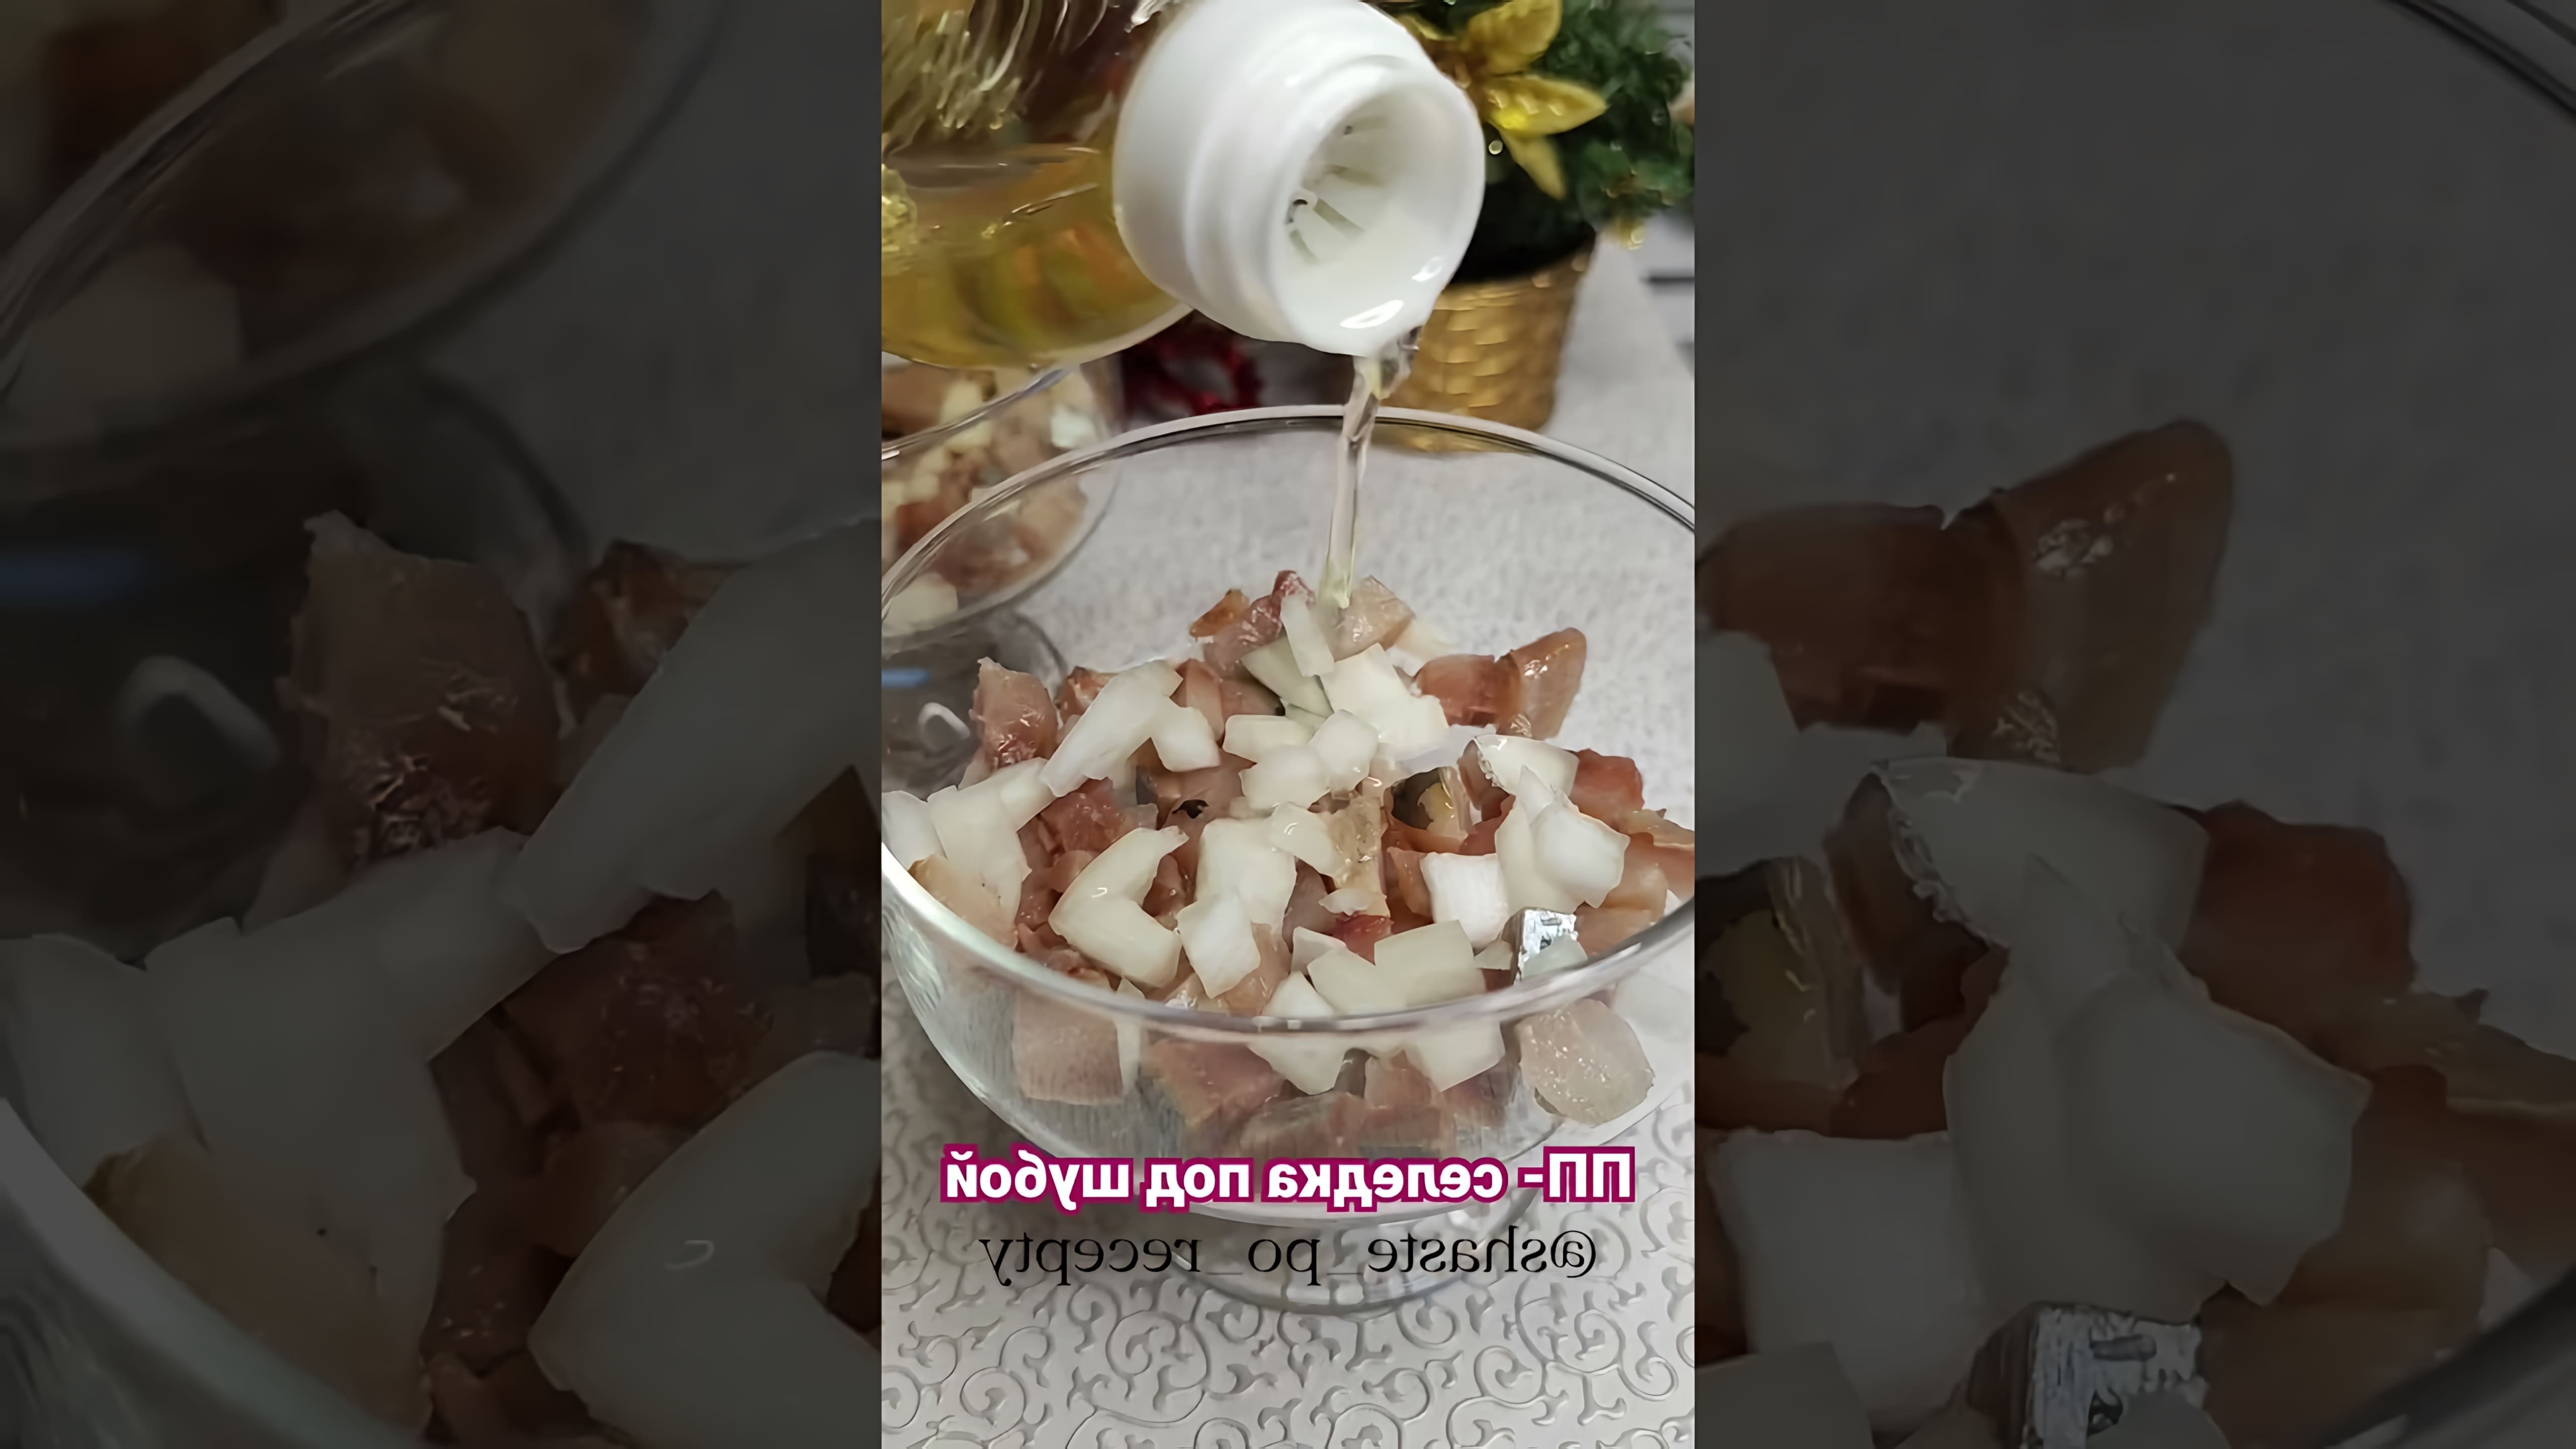 В этом видео демонстрируется рецепт приготовления селедки под шубой с использованием низкокалорийного ПП майонеза